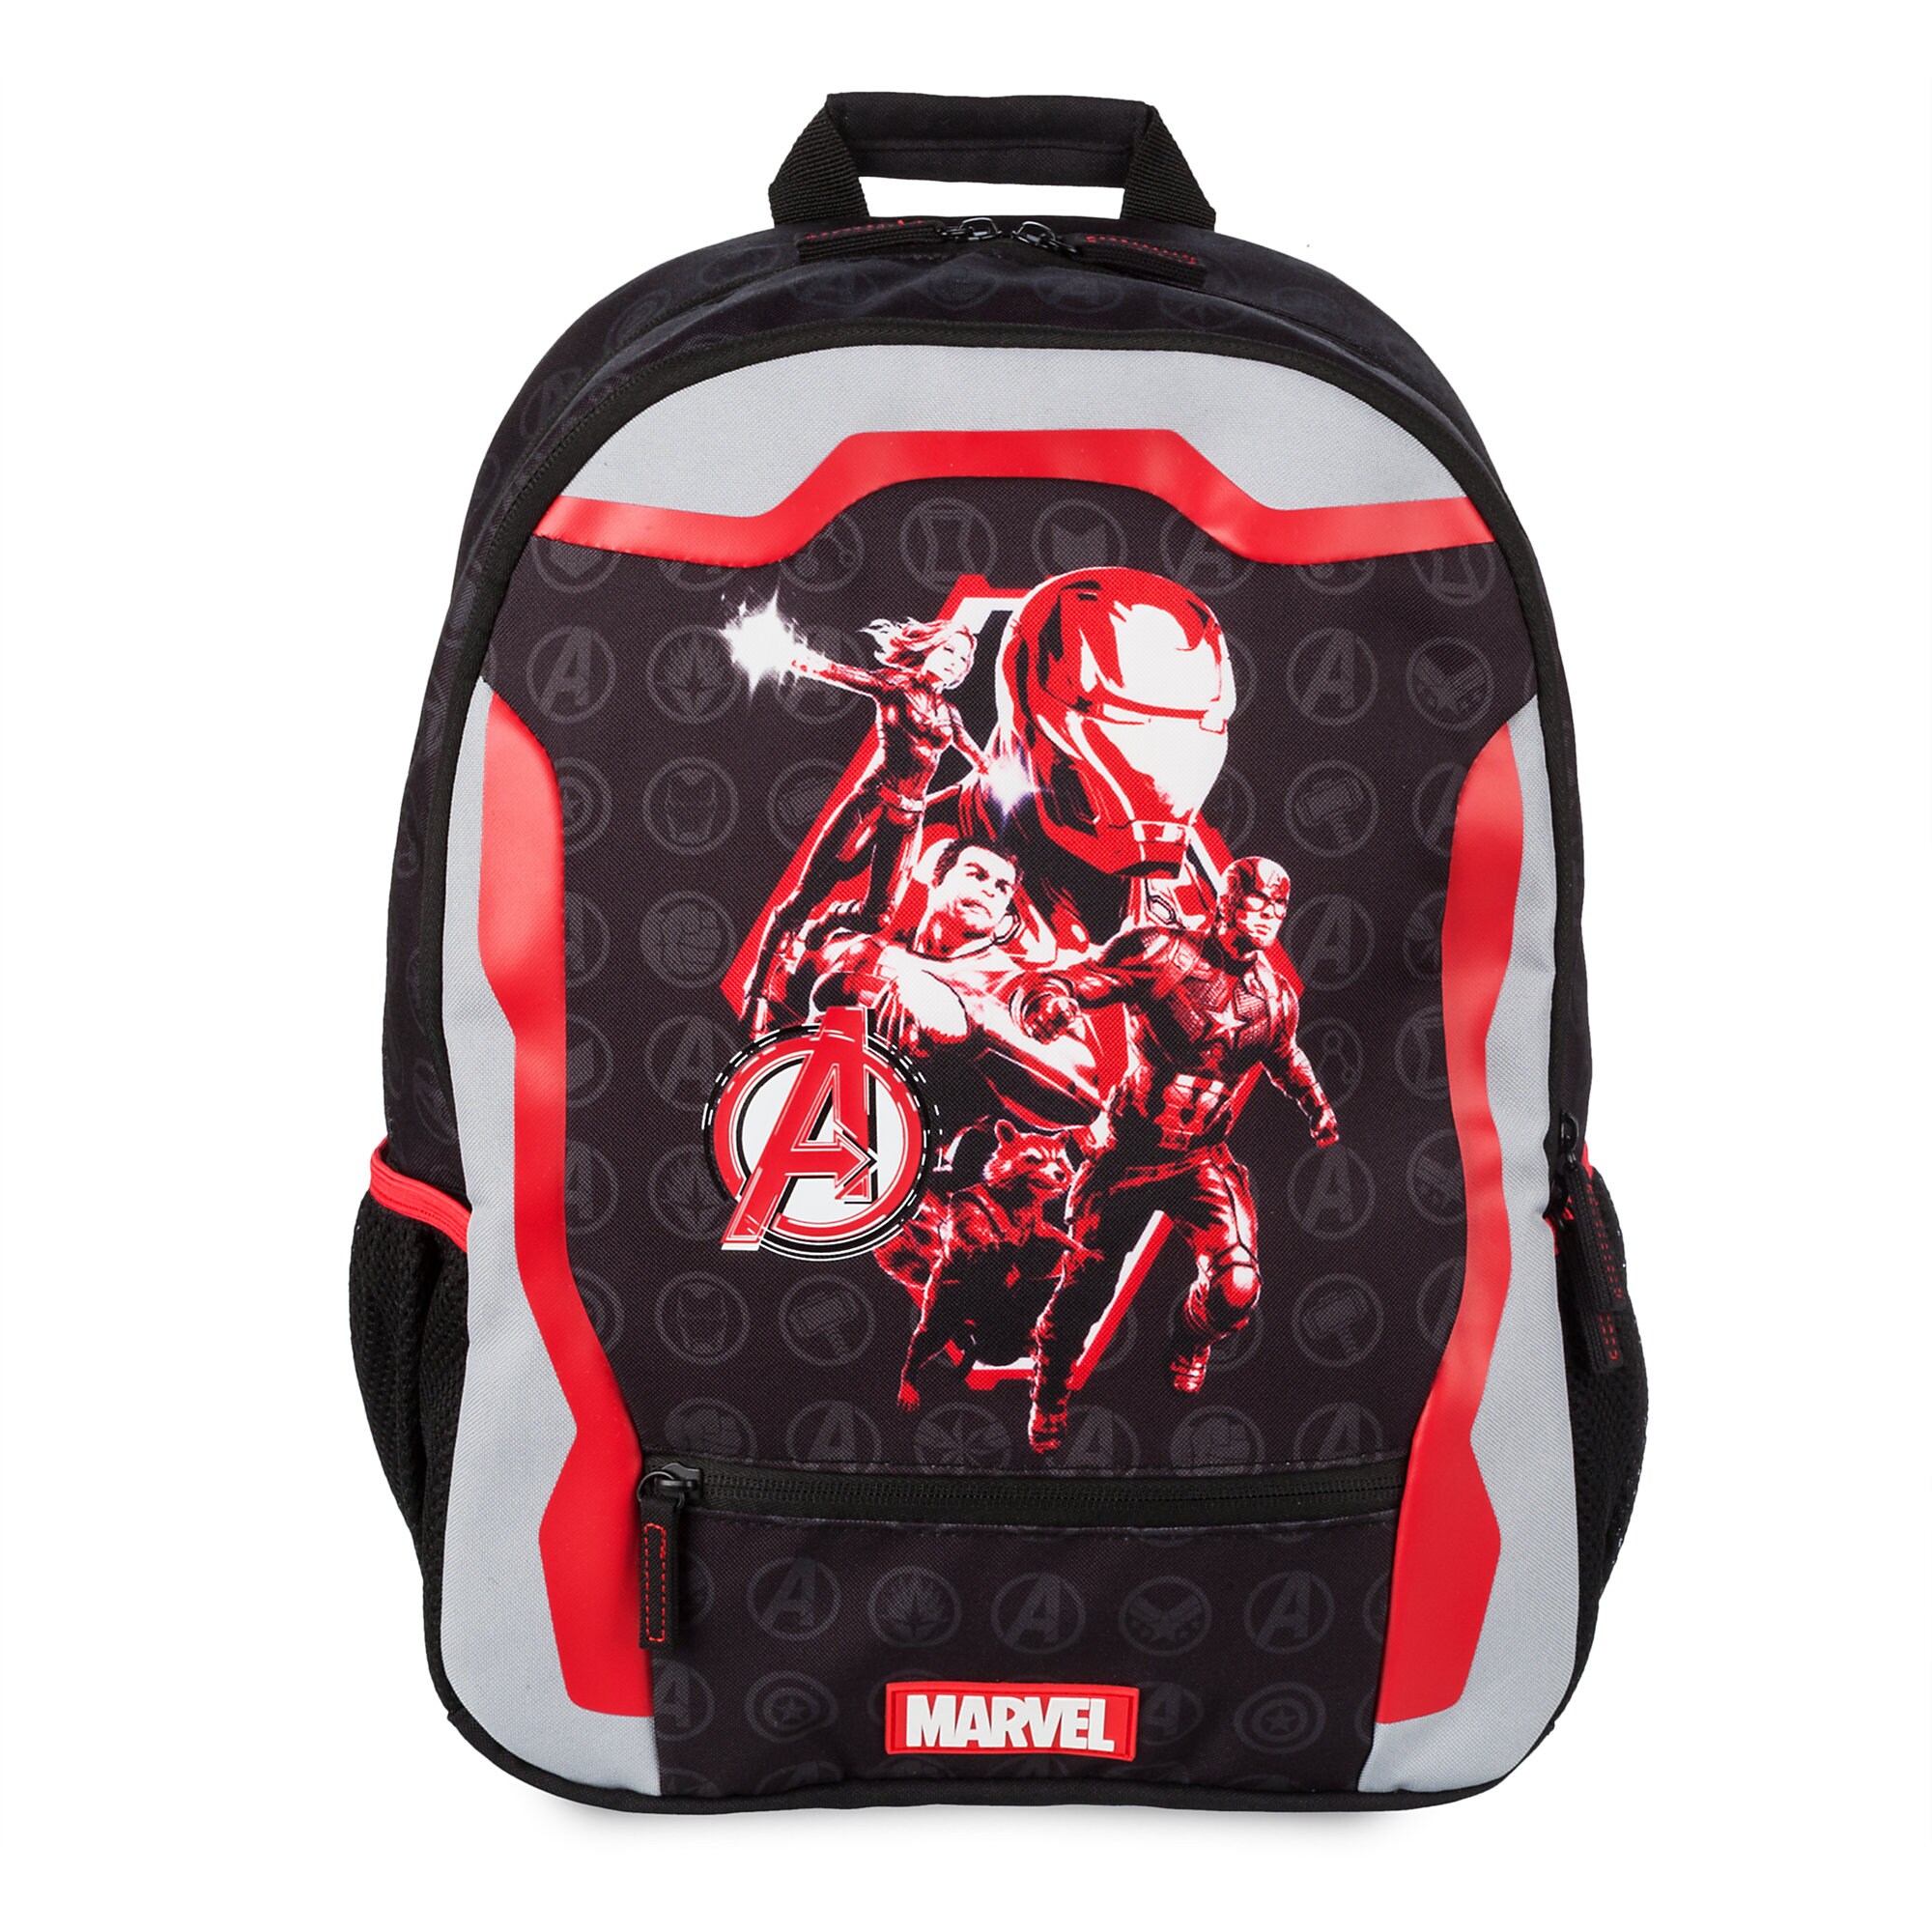 Marvel's Avengers: Endgame Backpack - Personalized